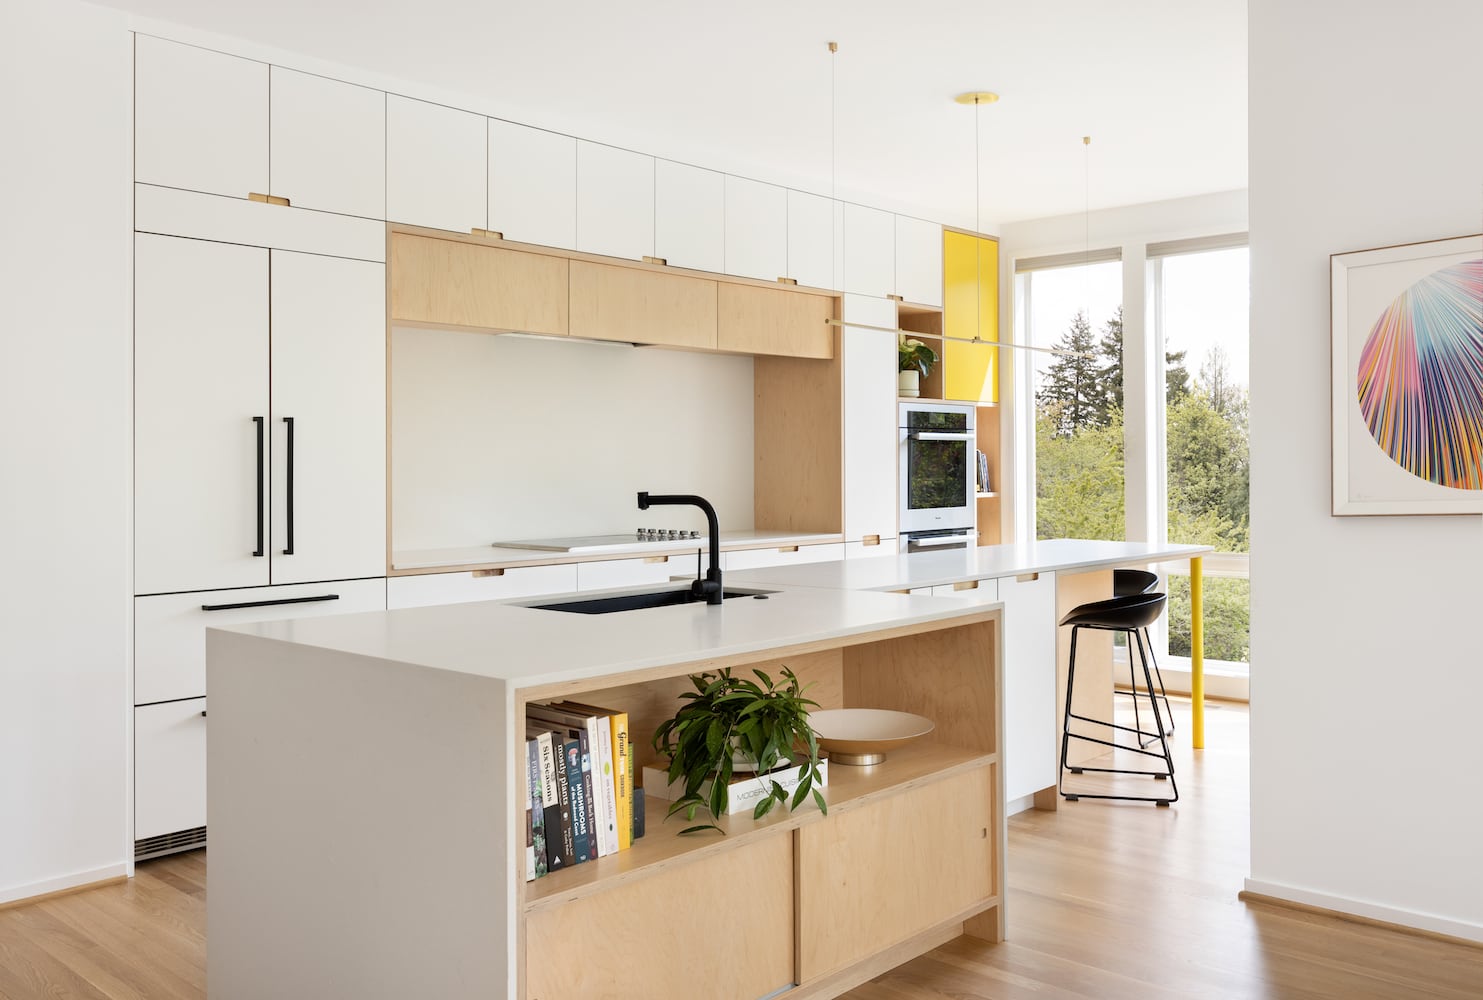 Portland modern kitchen remodel by interior designer Stephanie Dyer with island